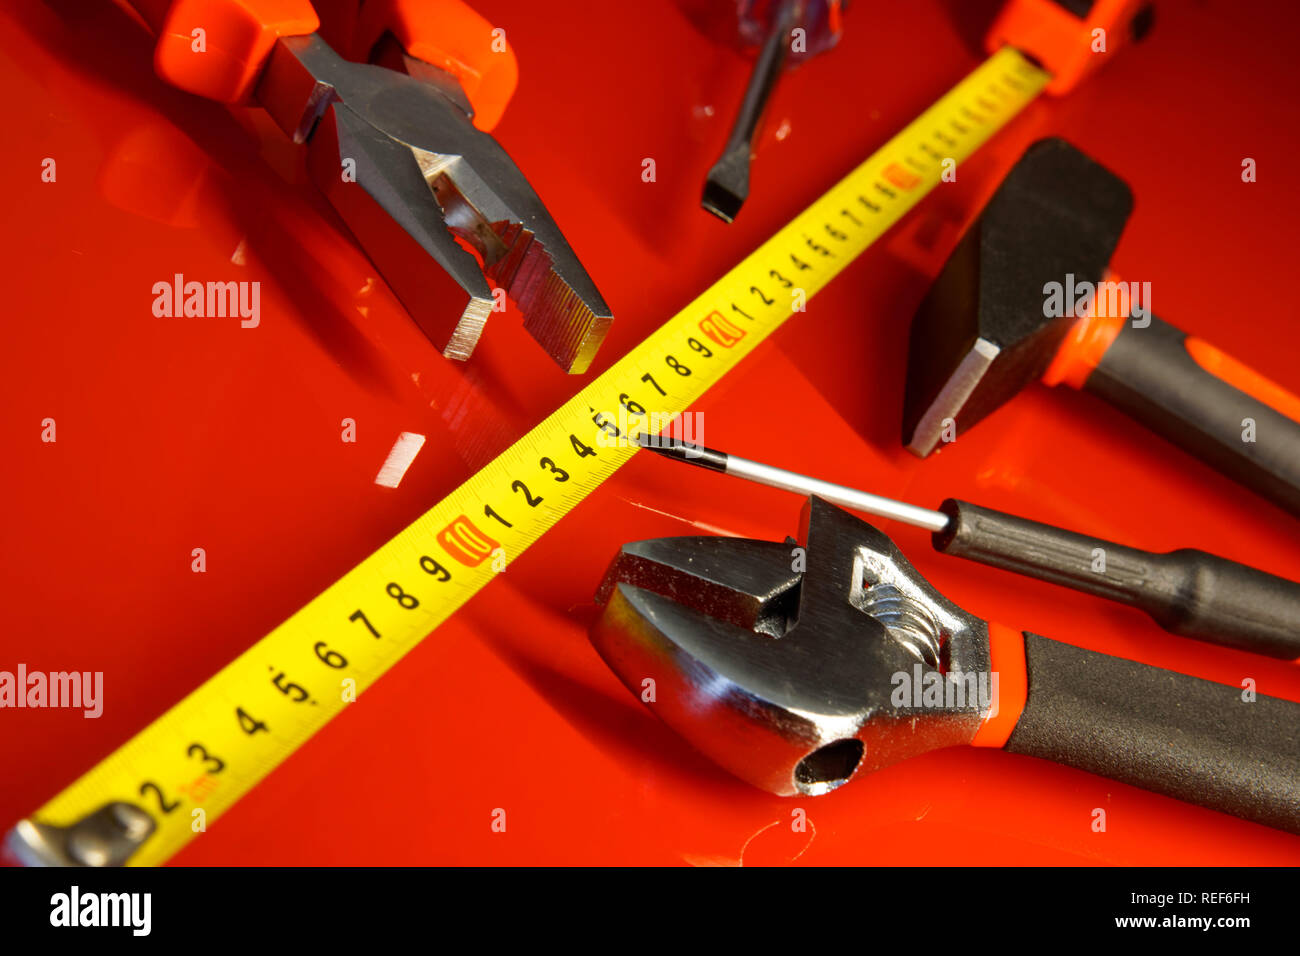 Maßband, Hammer, Schraubendreher, Zangen, und verstellbarer Schraubenschlüssel auf einem roten polierte Oberfläche. Werkzeuge für die Mechaniker. Stockfoto